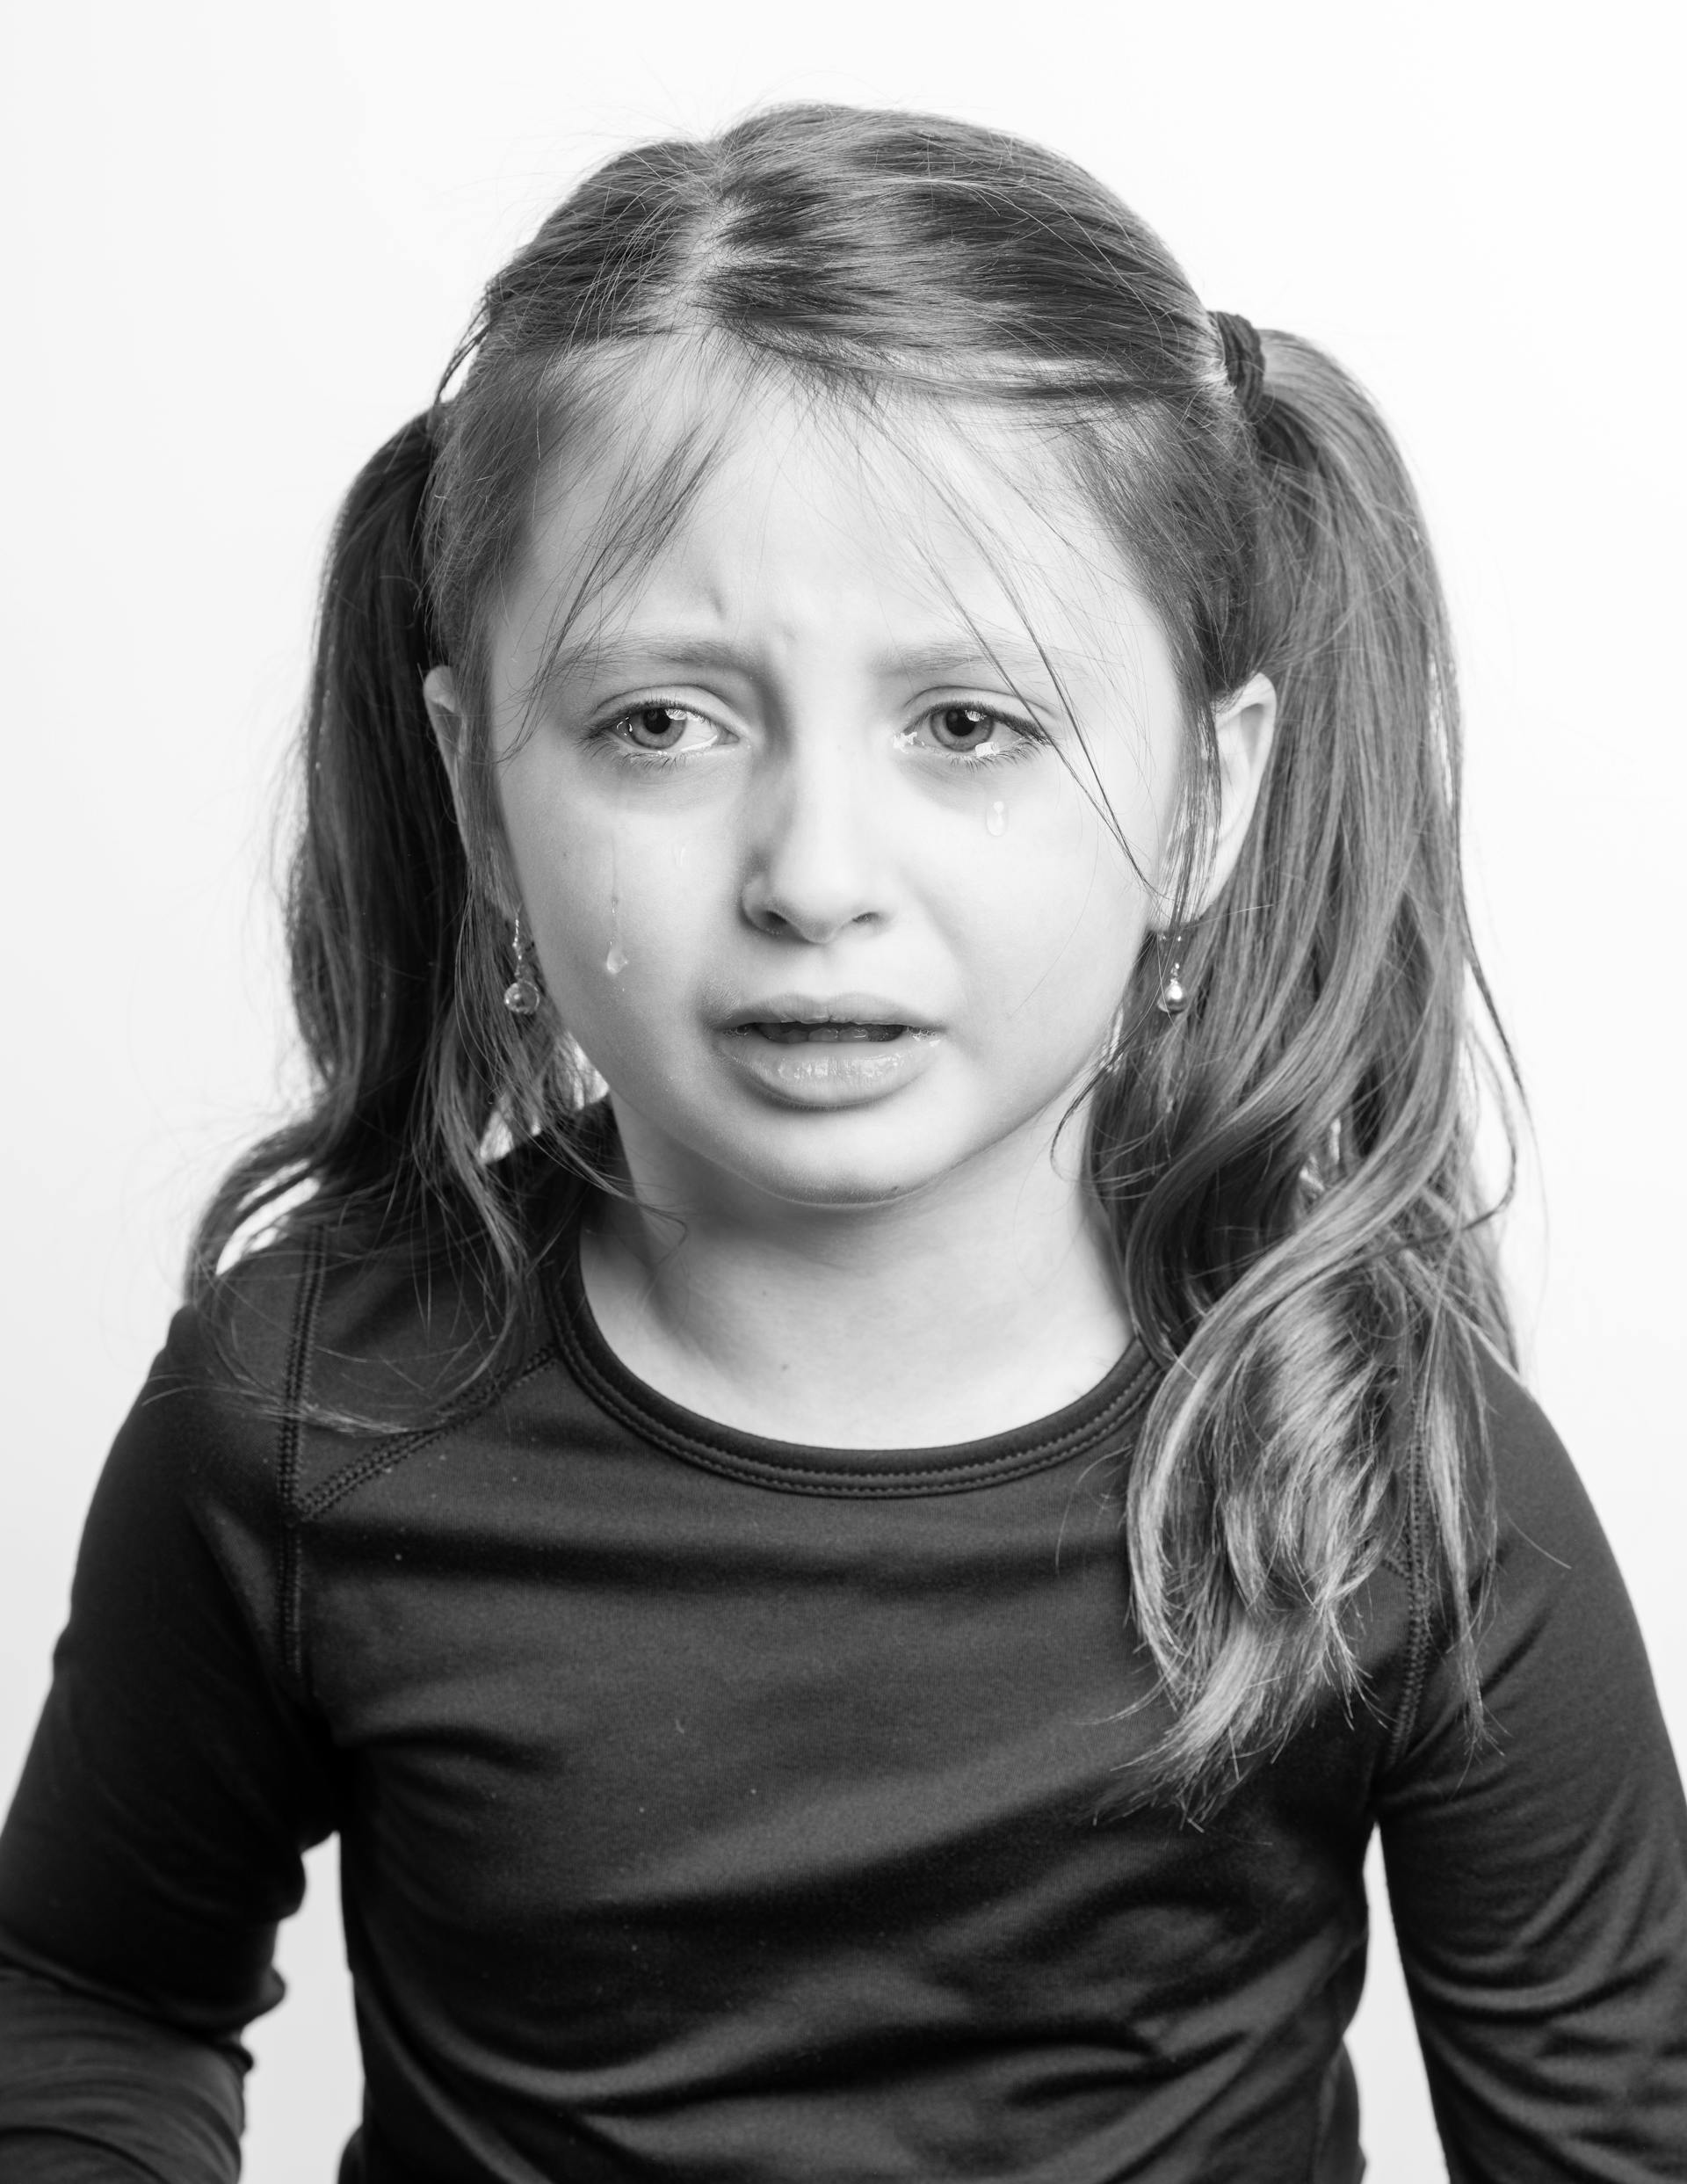 Une photo en niveaux de gris d'une petite fille qui pleure | Source : Pexels